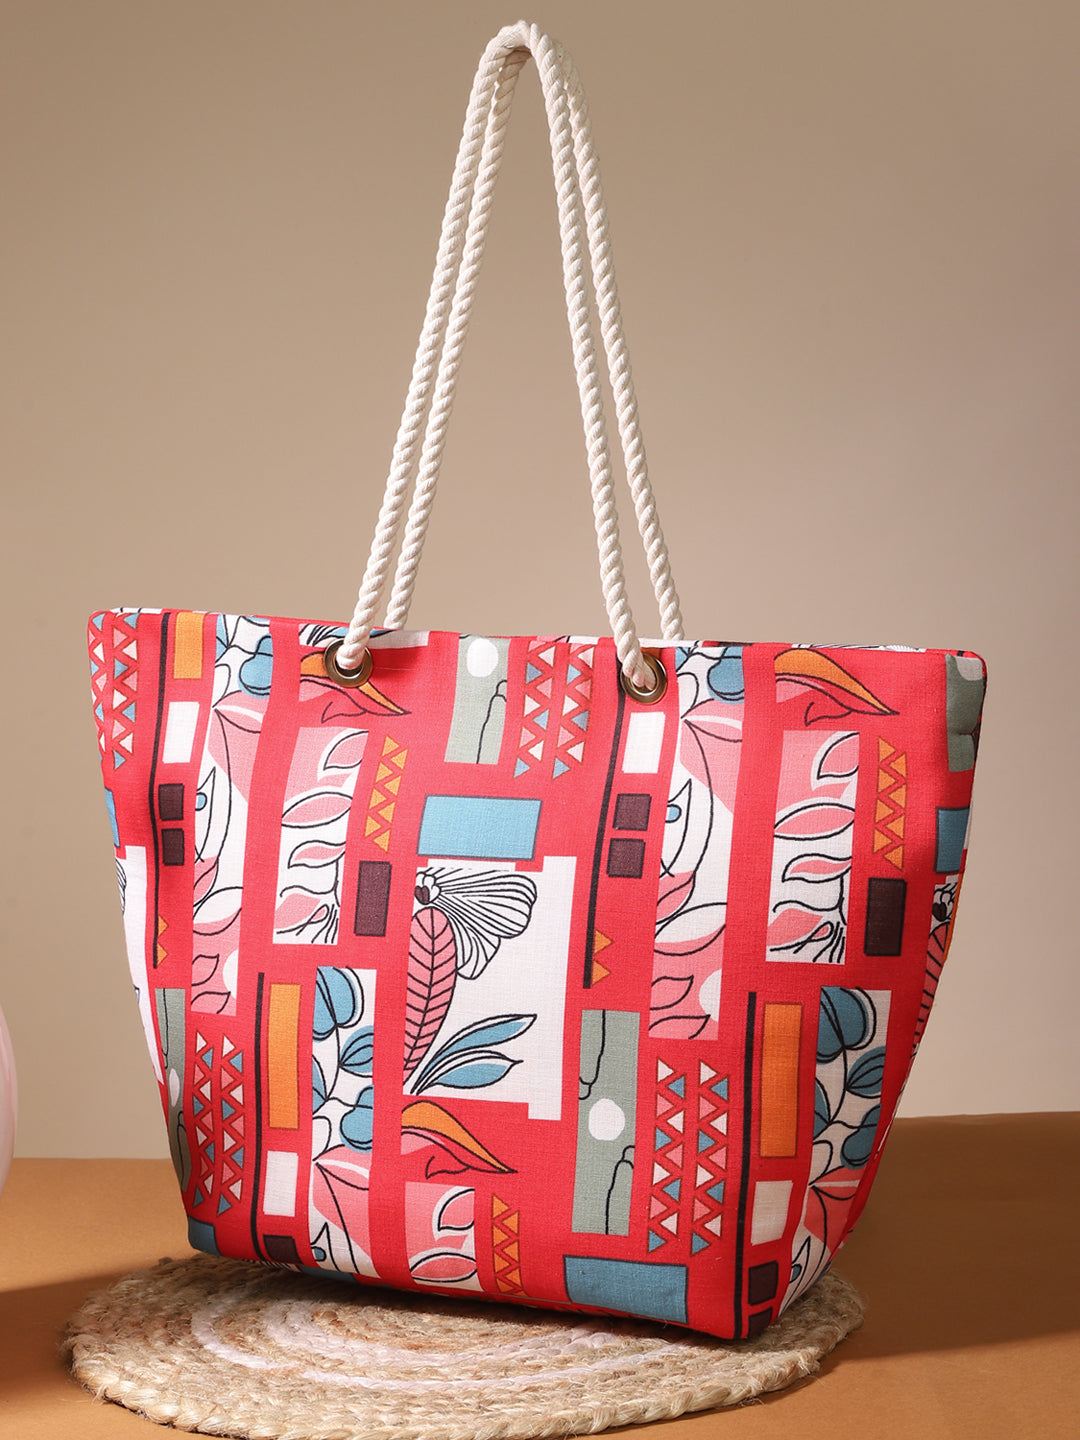 Abstract Print Handbag With Rope Handle & Zip Closure